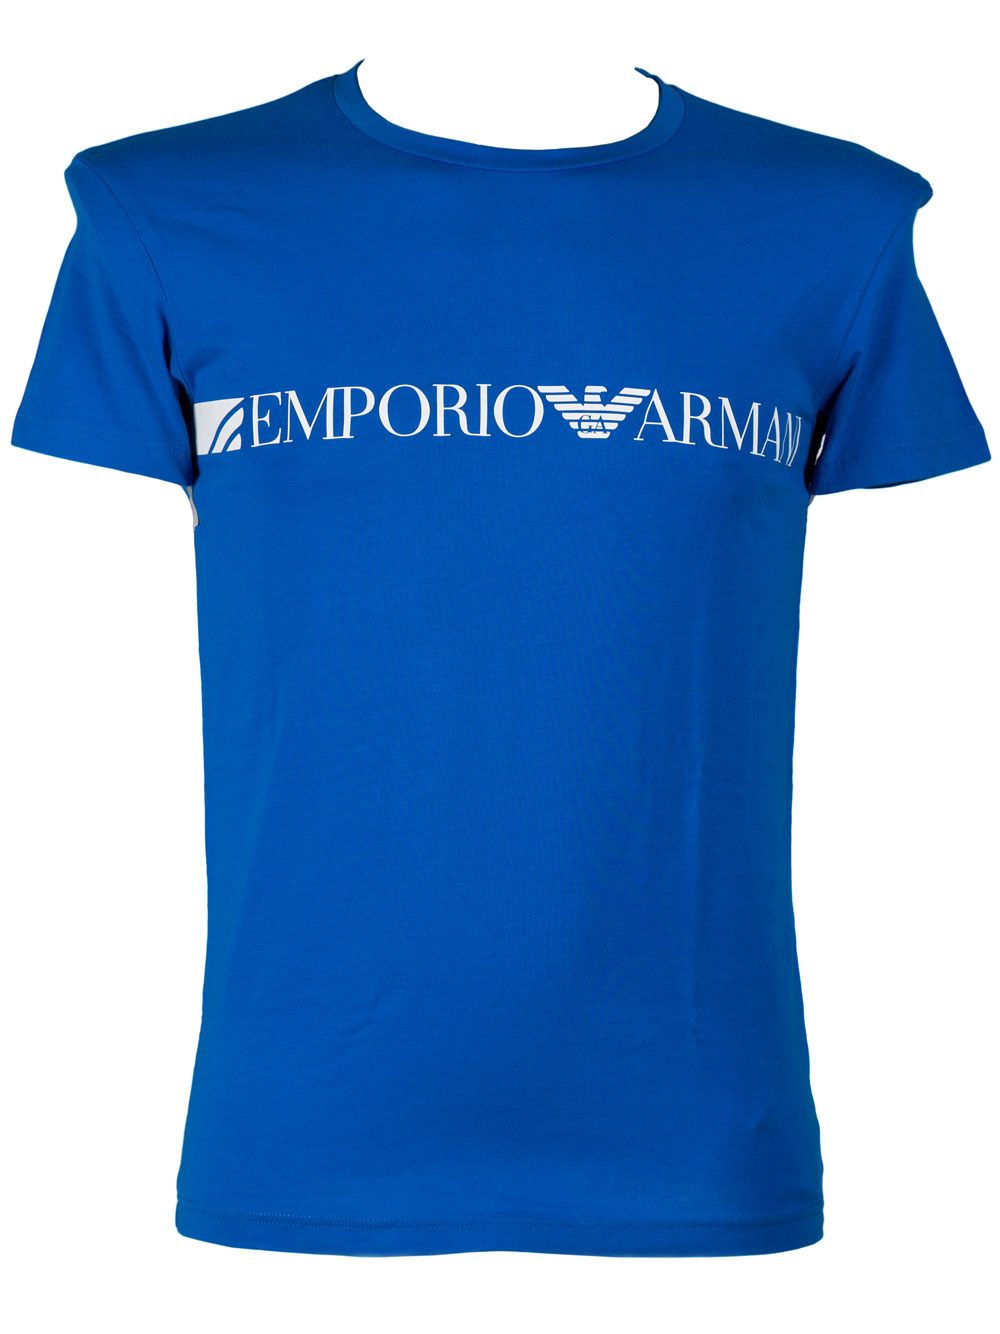 Uomo T-shirt da T-shirt Giorgio Armani T-shirtGiorgio Armani in Cotone da Uomo colore Blu 